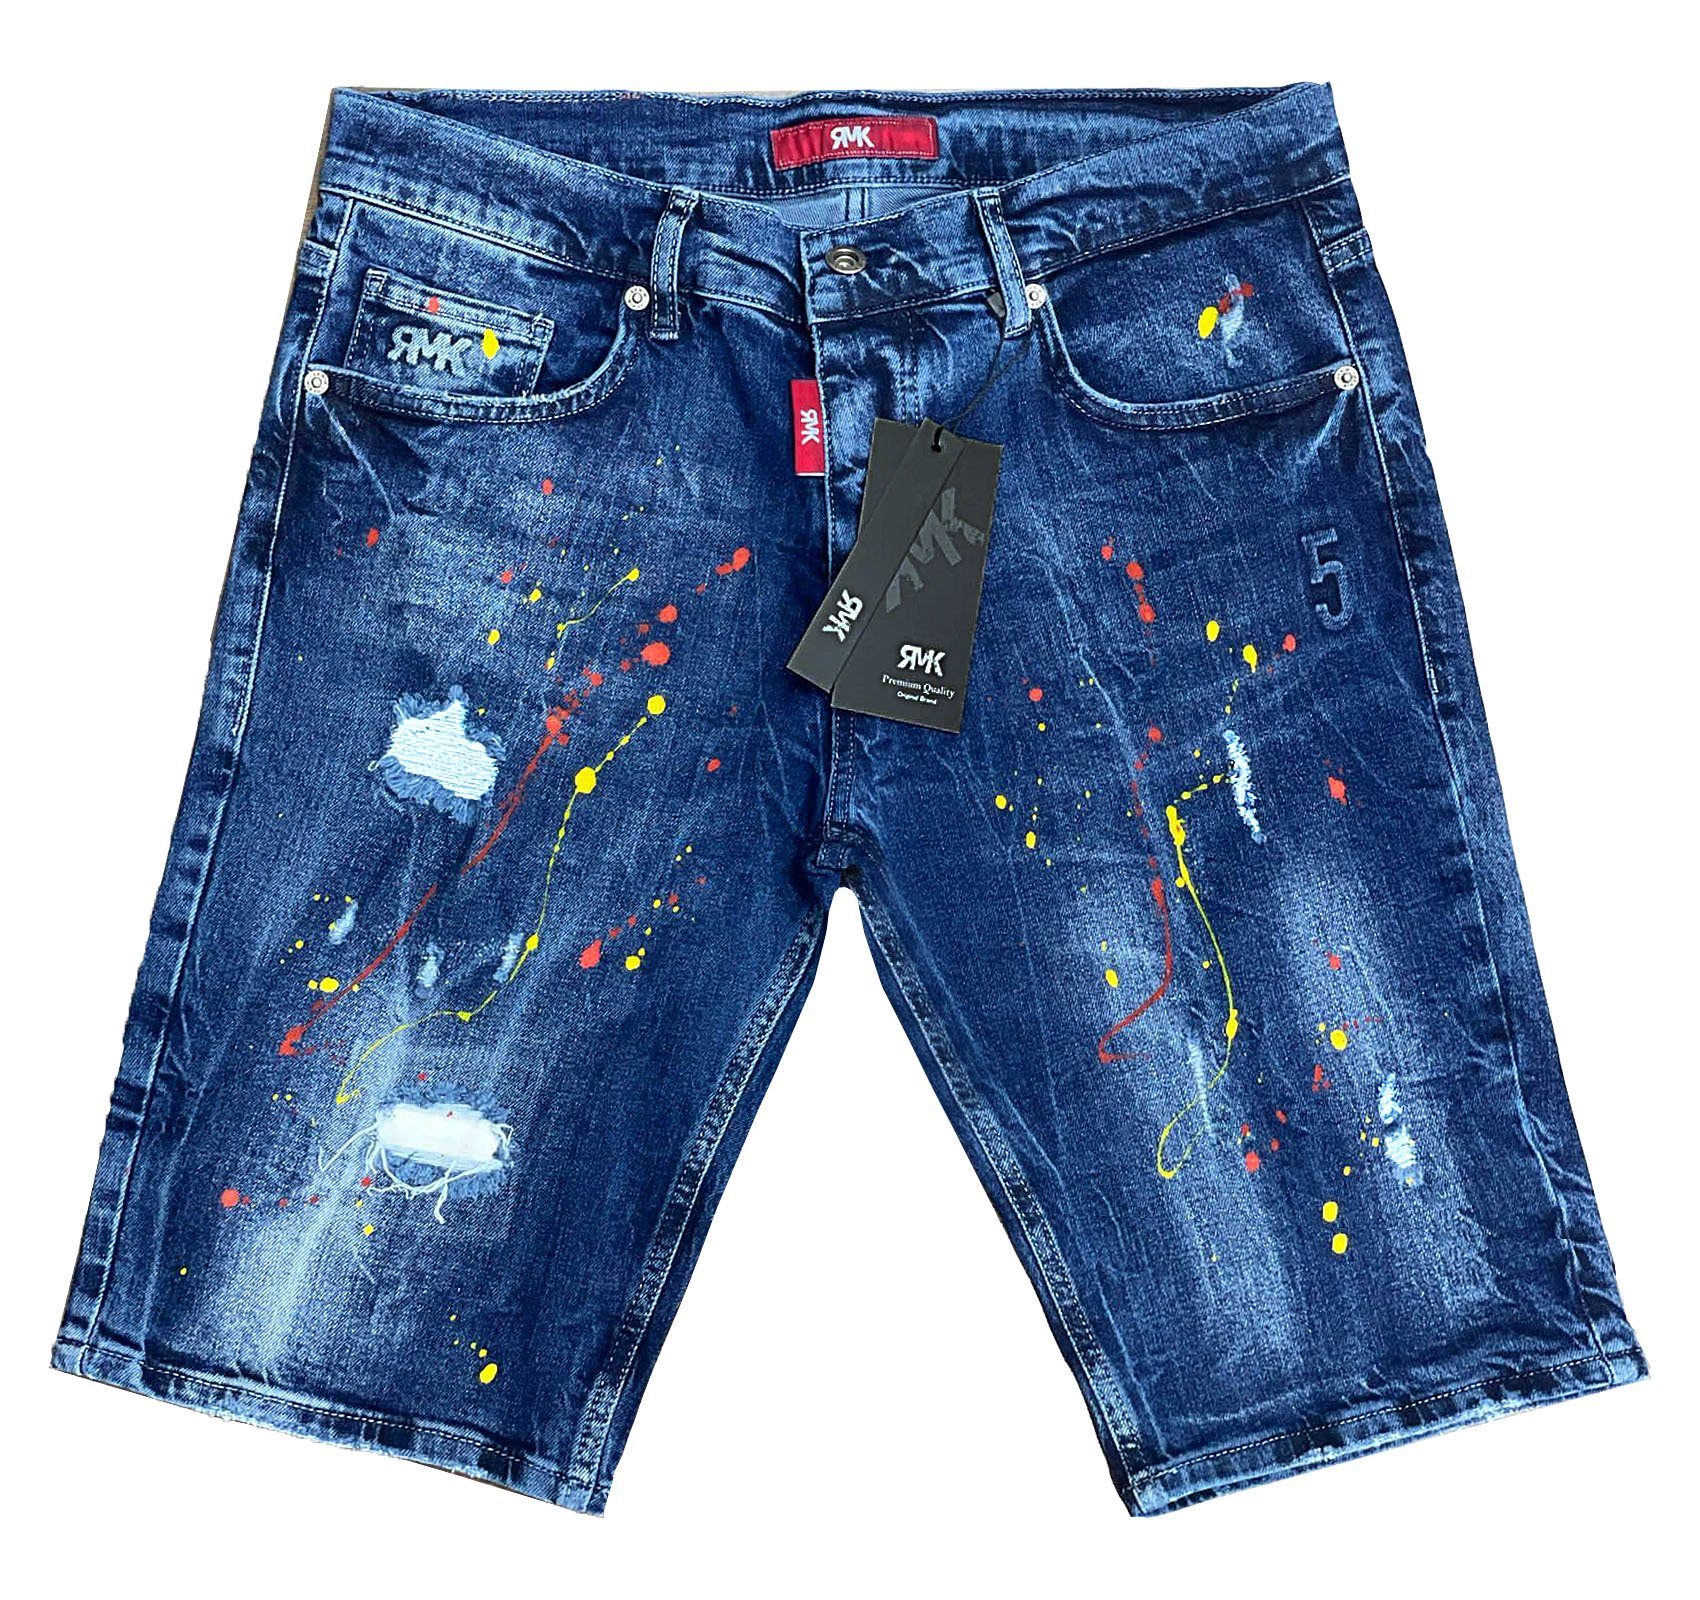 RMK Jeansshorts »5 Pocket Jeans short Blue mit Farbspritzern«